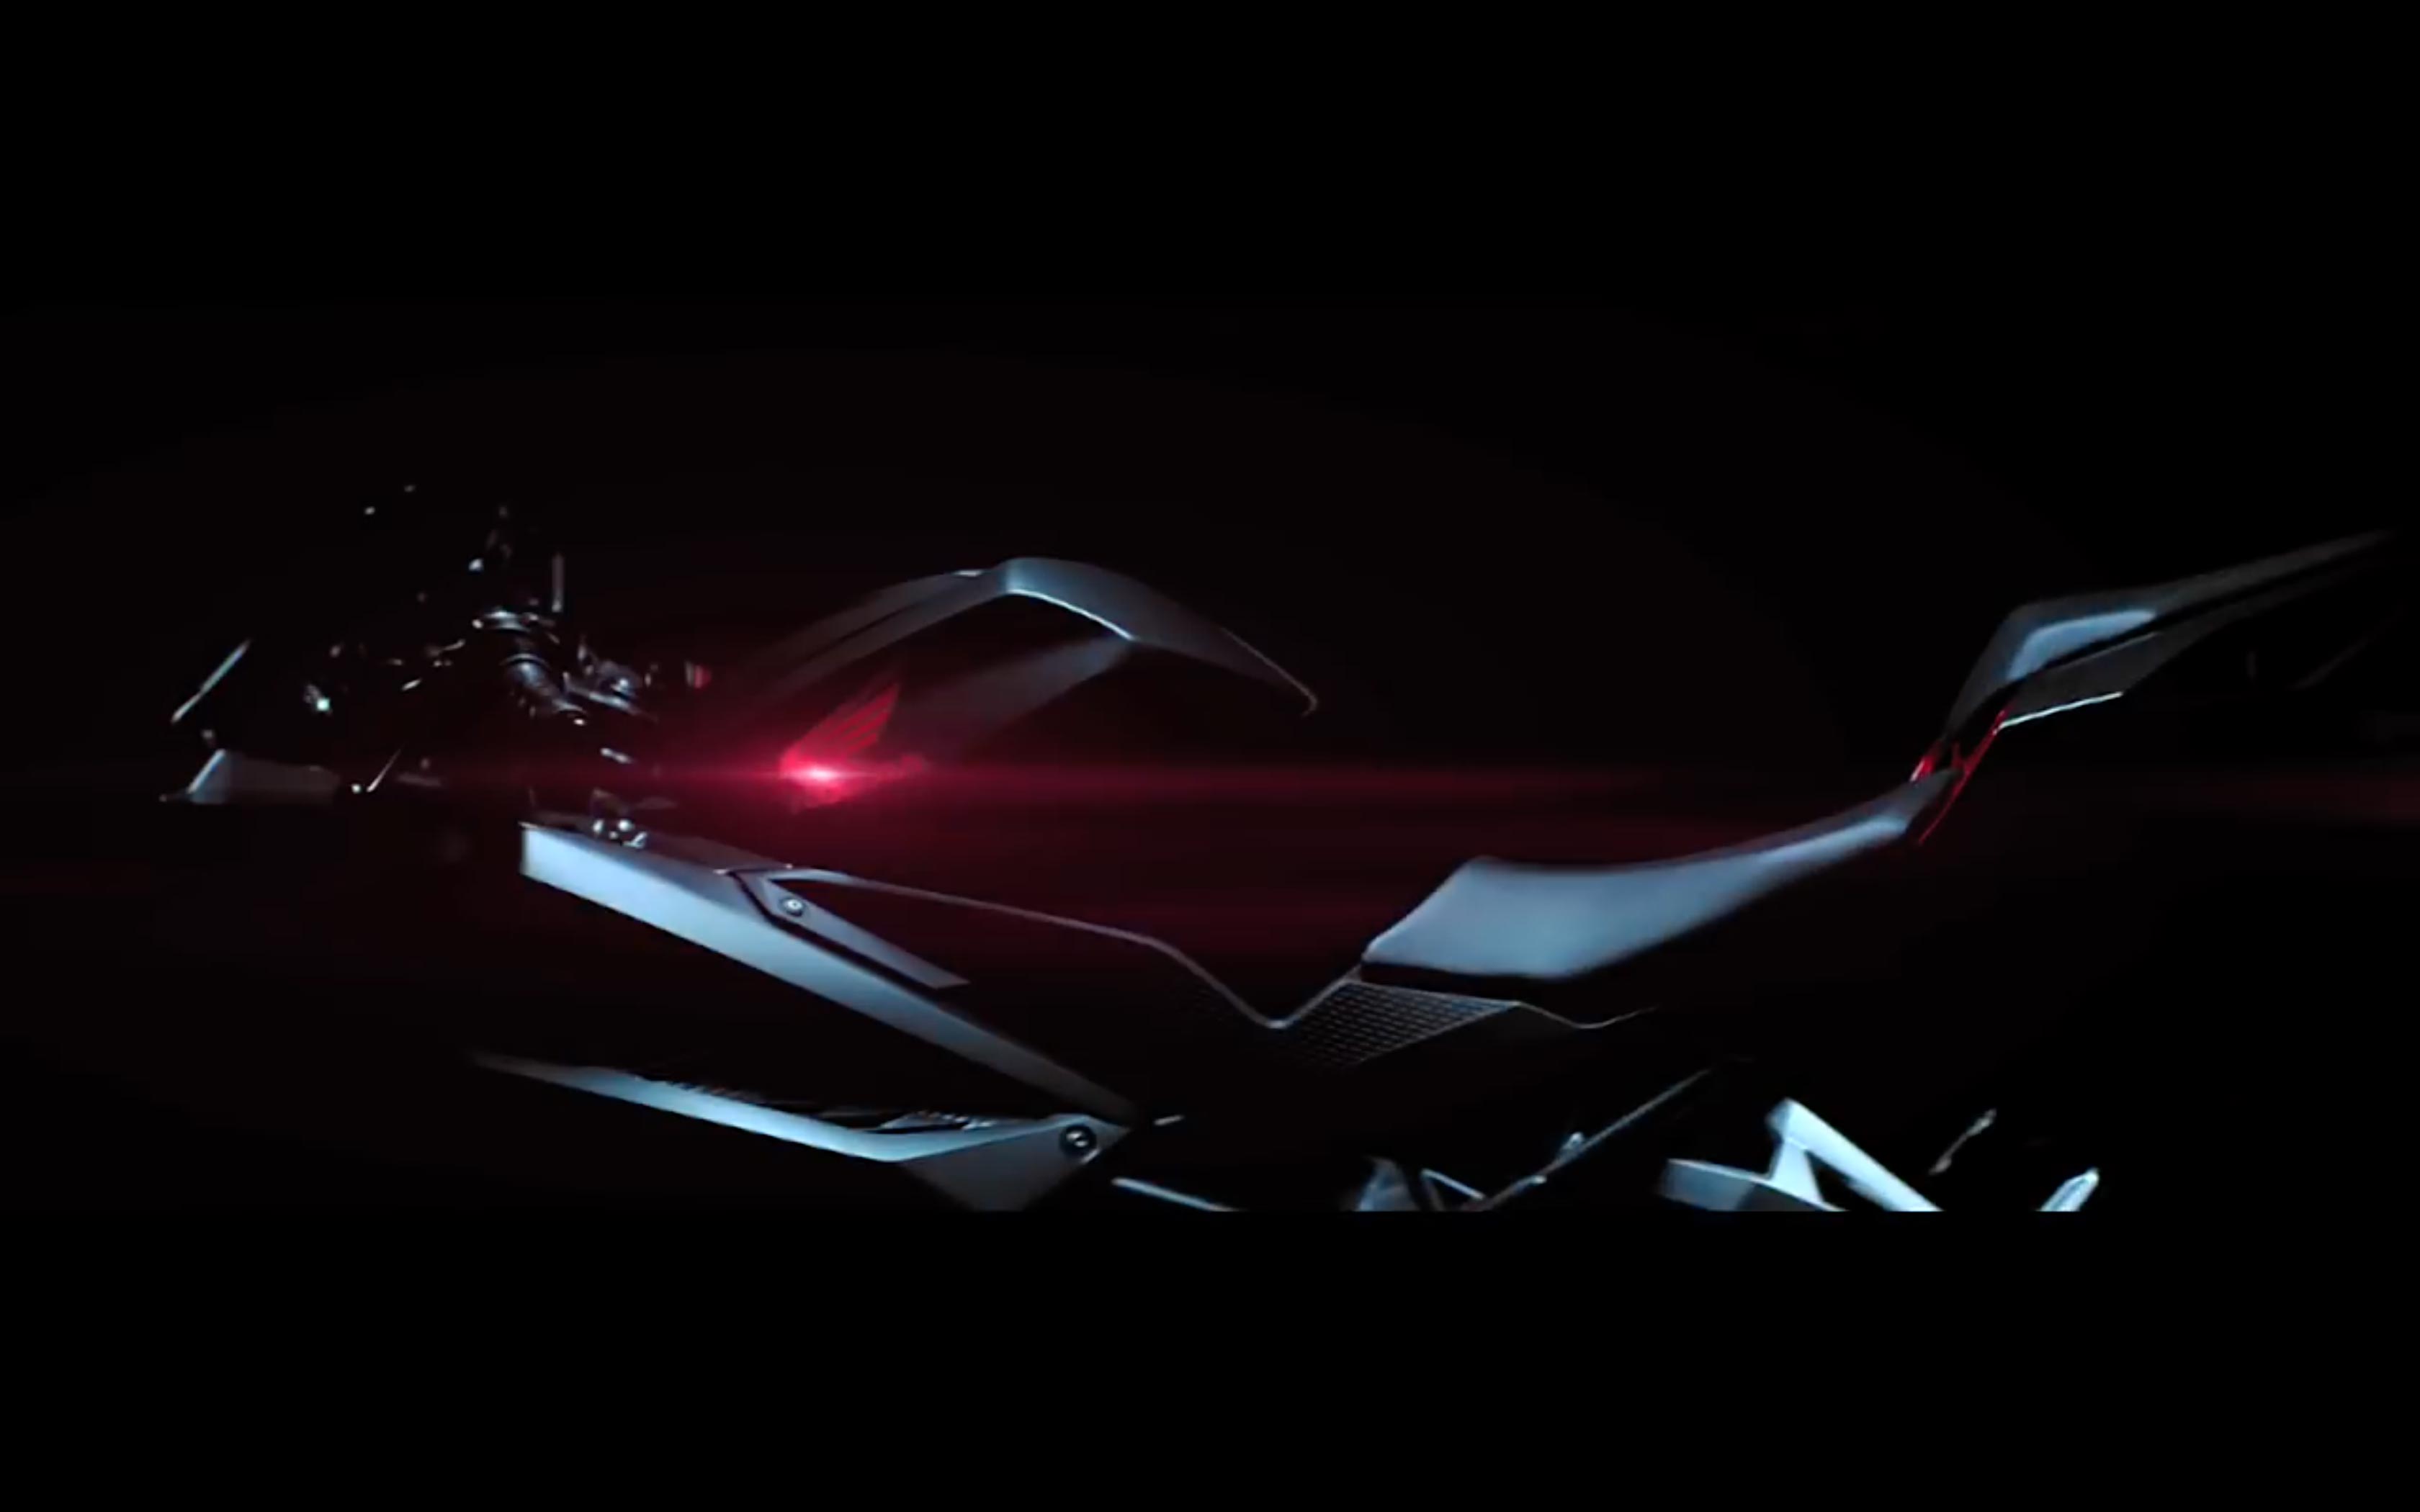 2017-Honda-CBR250RR-teaser-video-honda-logo.jpg